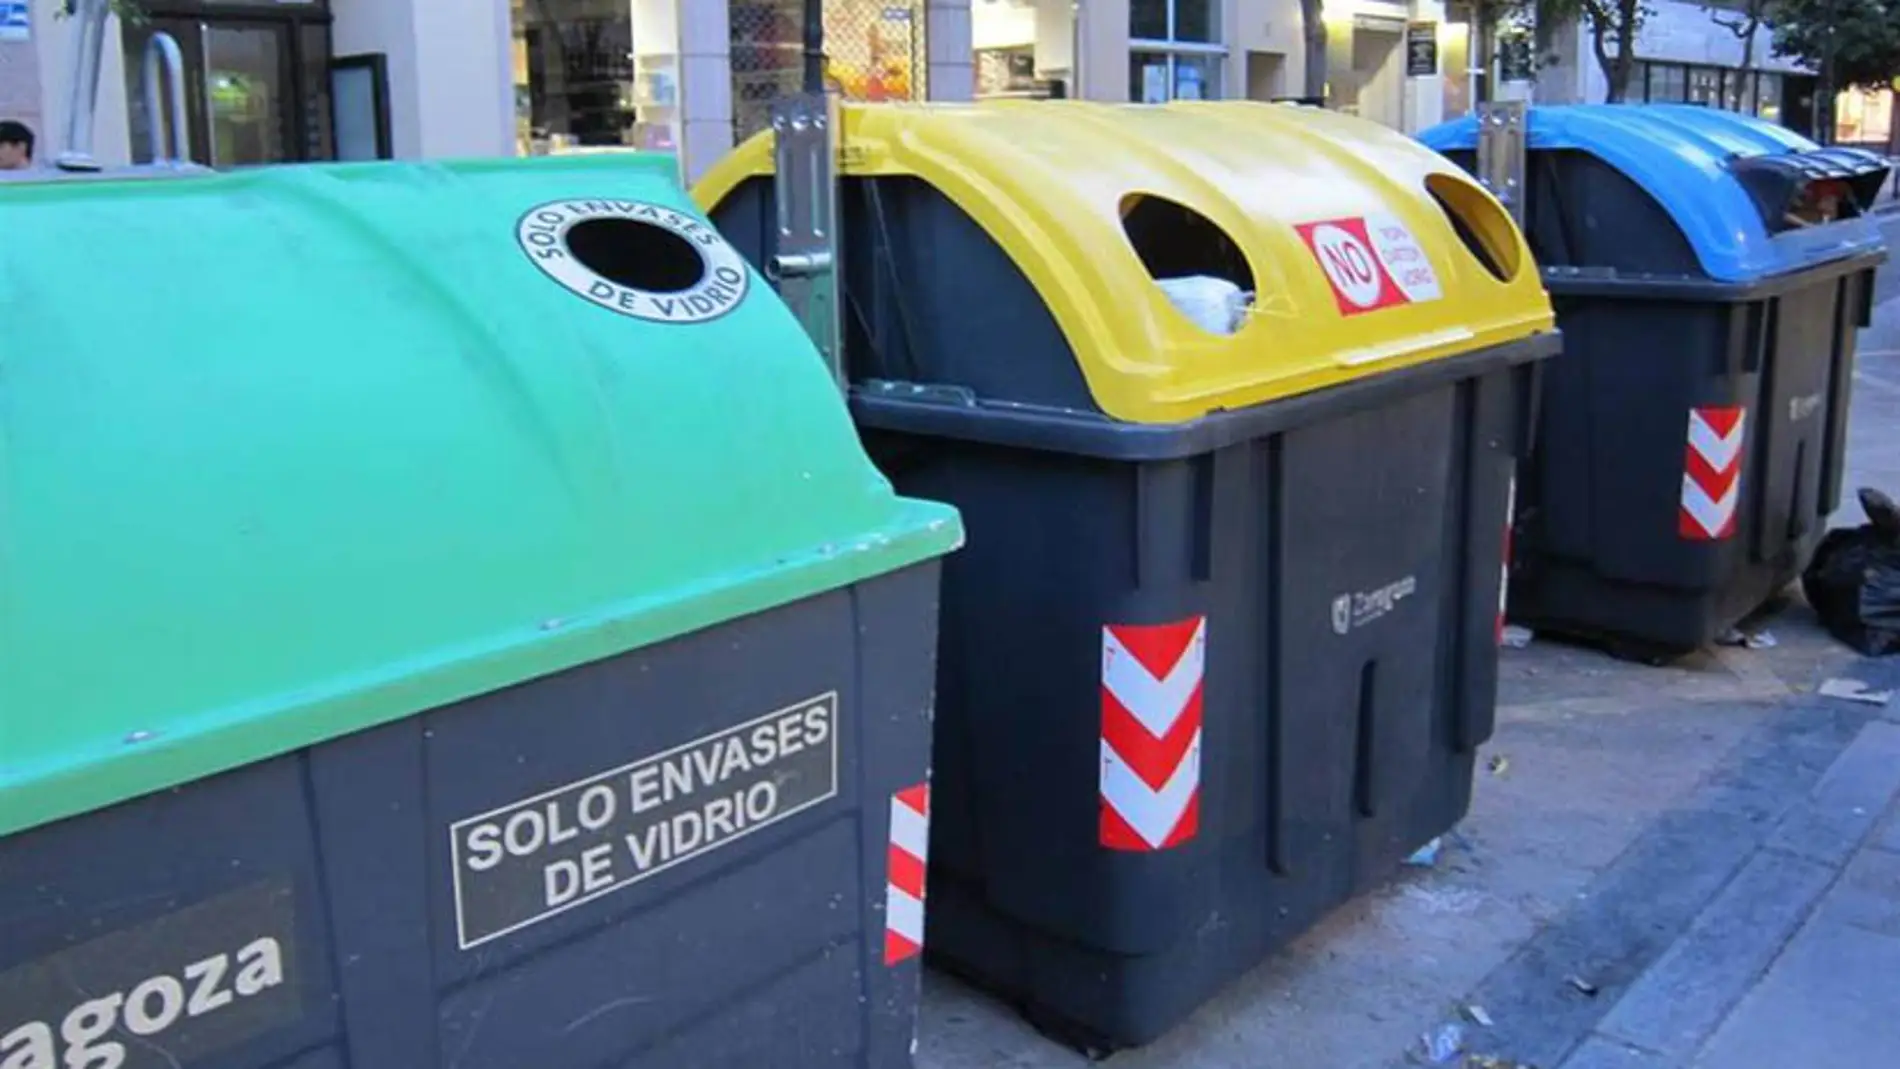 Las nuevas tecnologías se aplicarán a los contenedores de basura